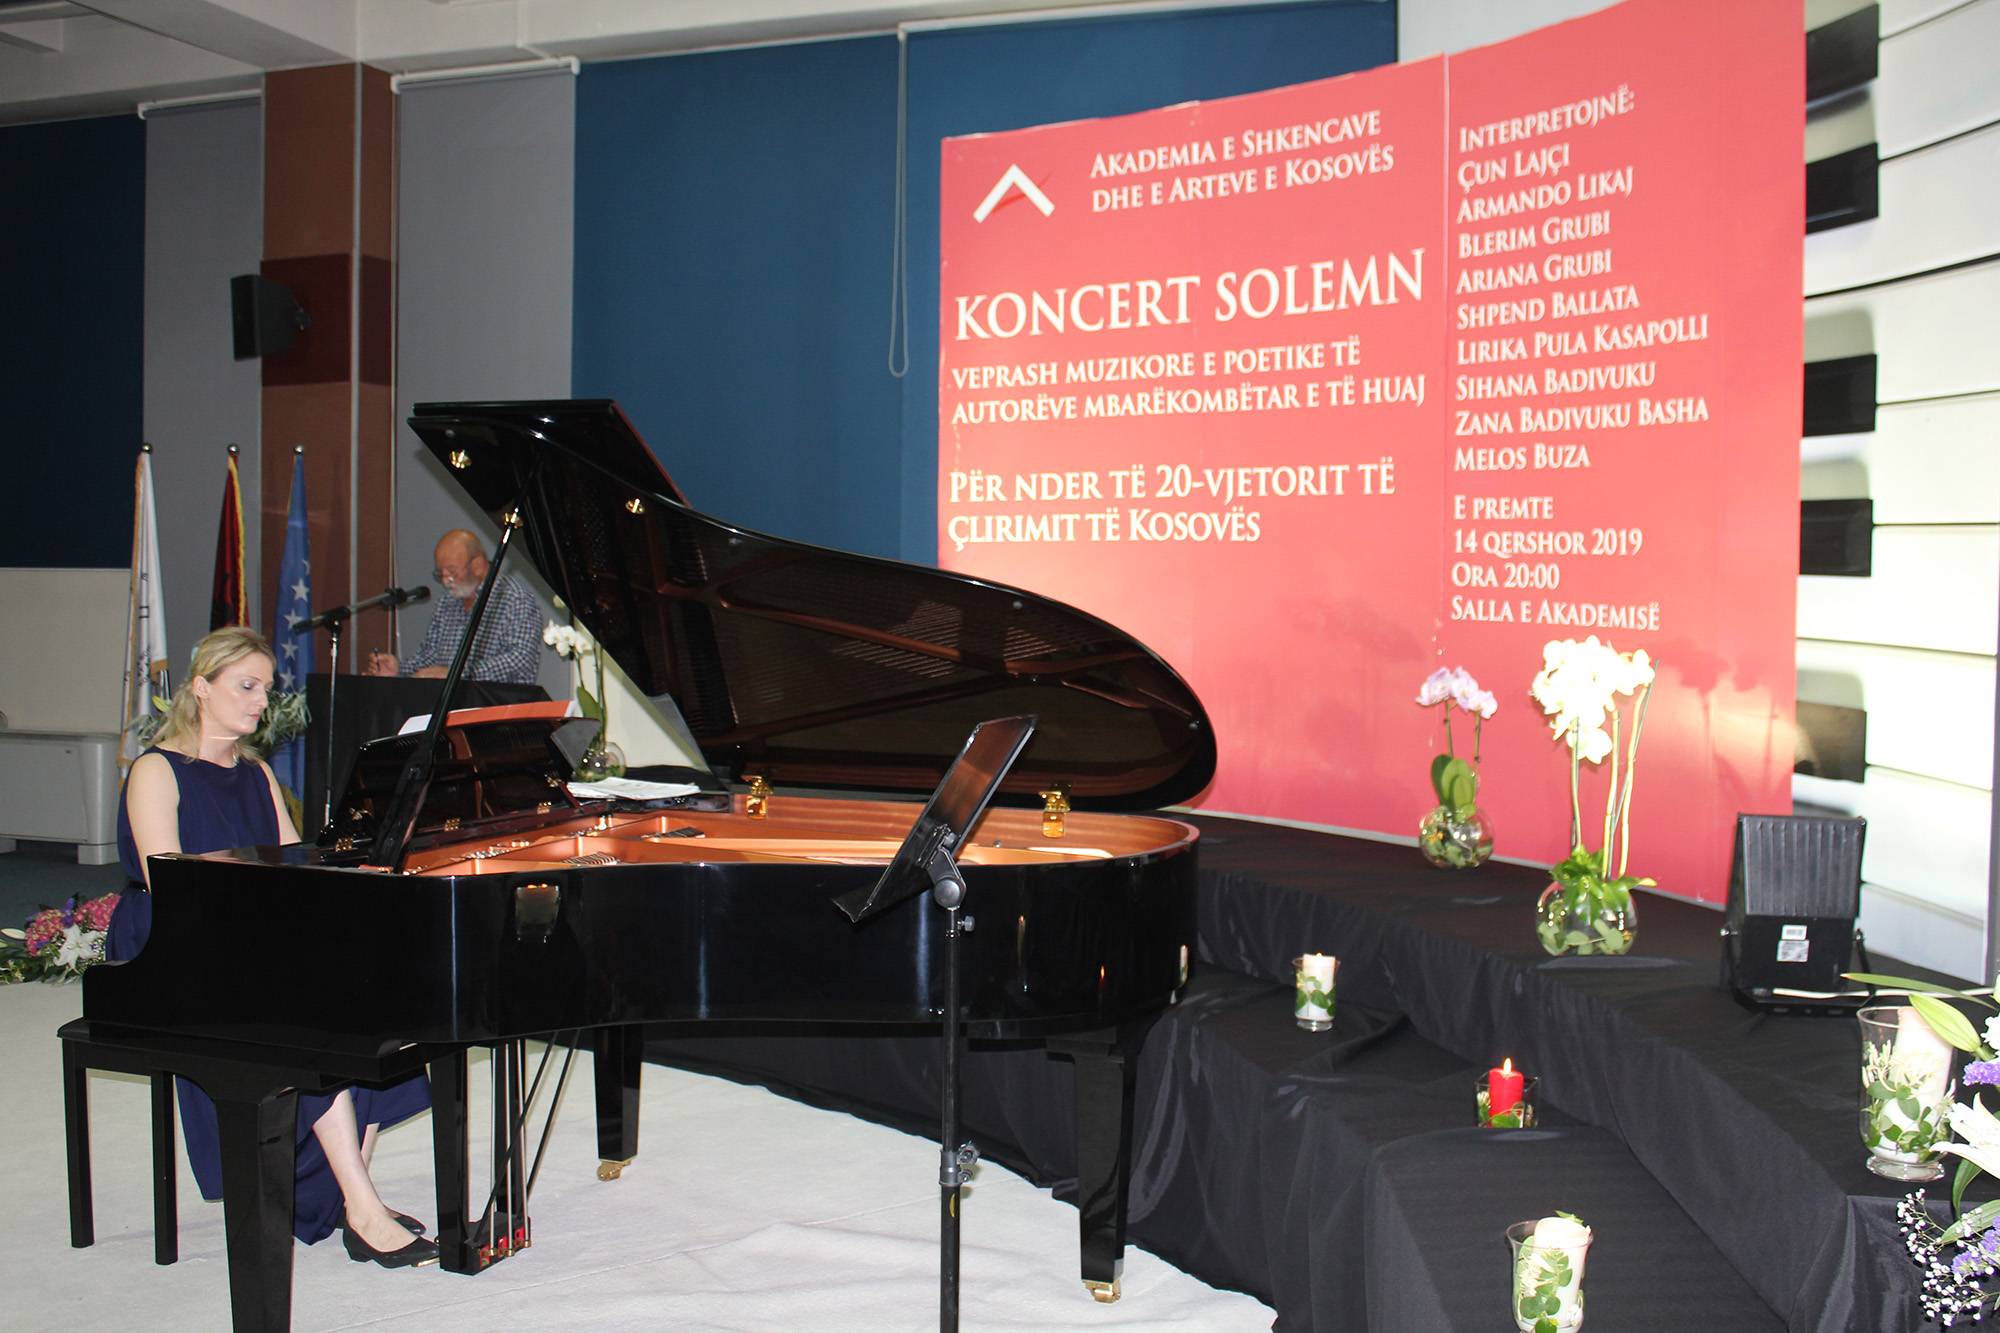 Koncert solemn, veprash muzikore e poetike të autorëve mbarëkombëtar e të huaj